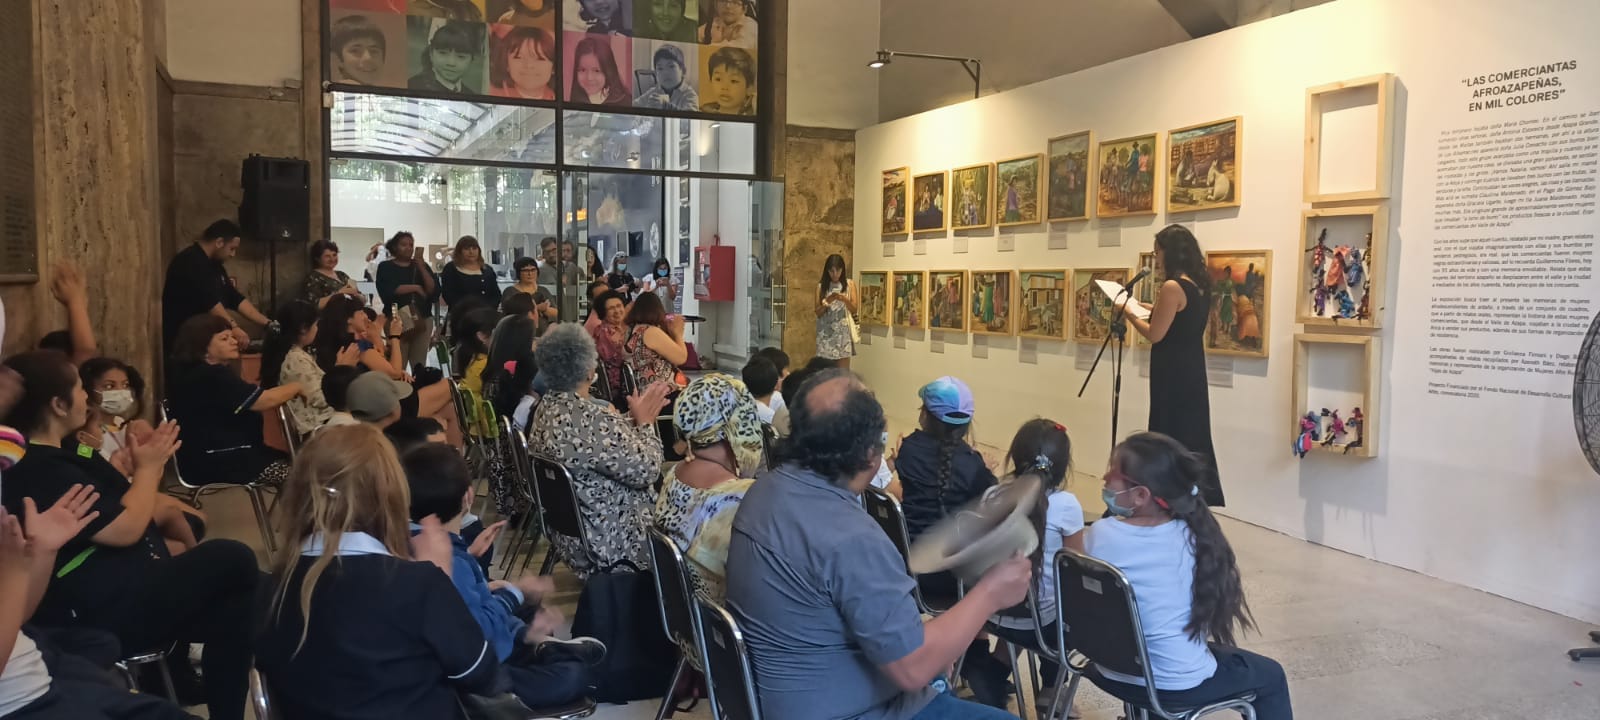 Inauguran exposición «Las comerciantas Afroazapeñas, en mil colores» en el marco del Día Nacional del Pueblo Tribal Afrodescendiente chileno